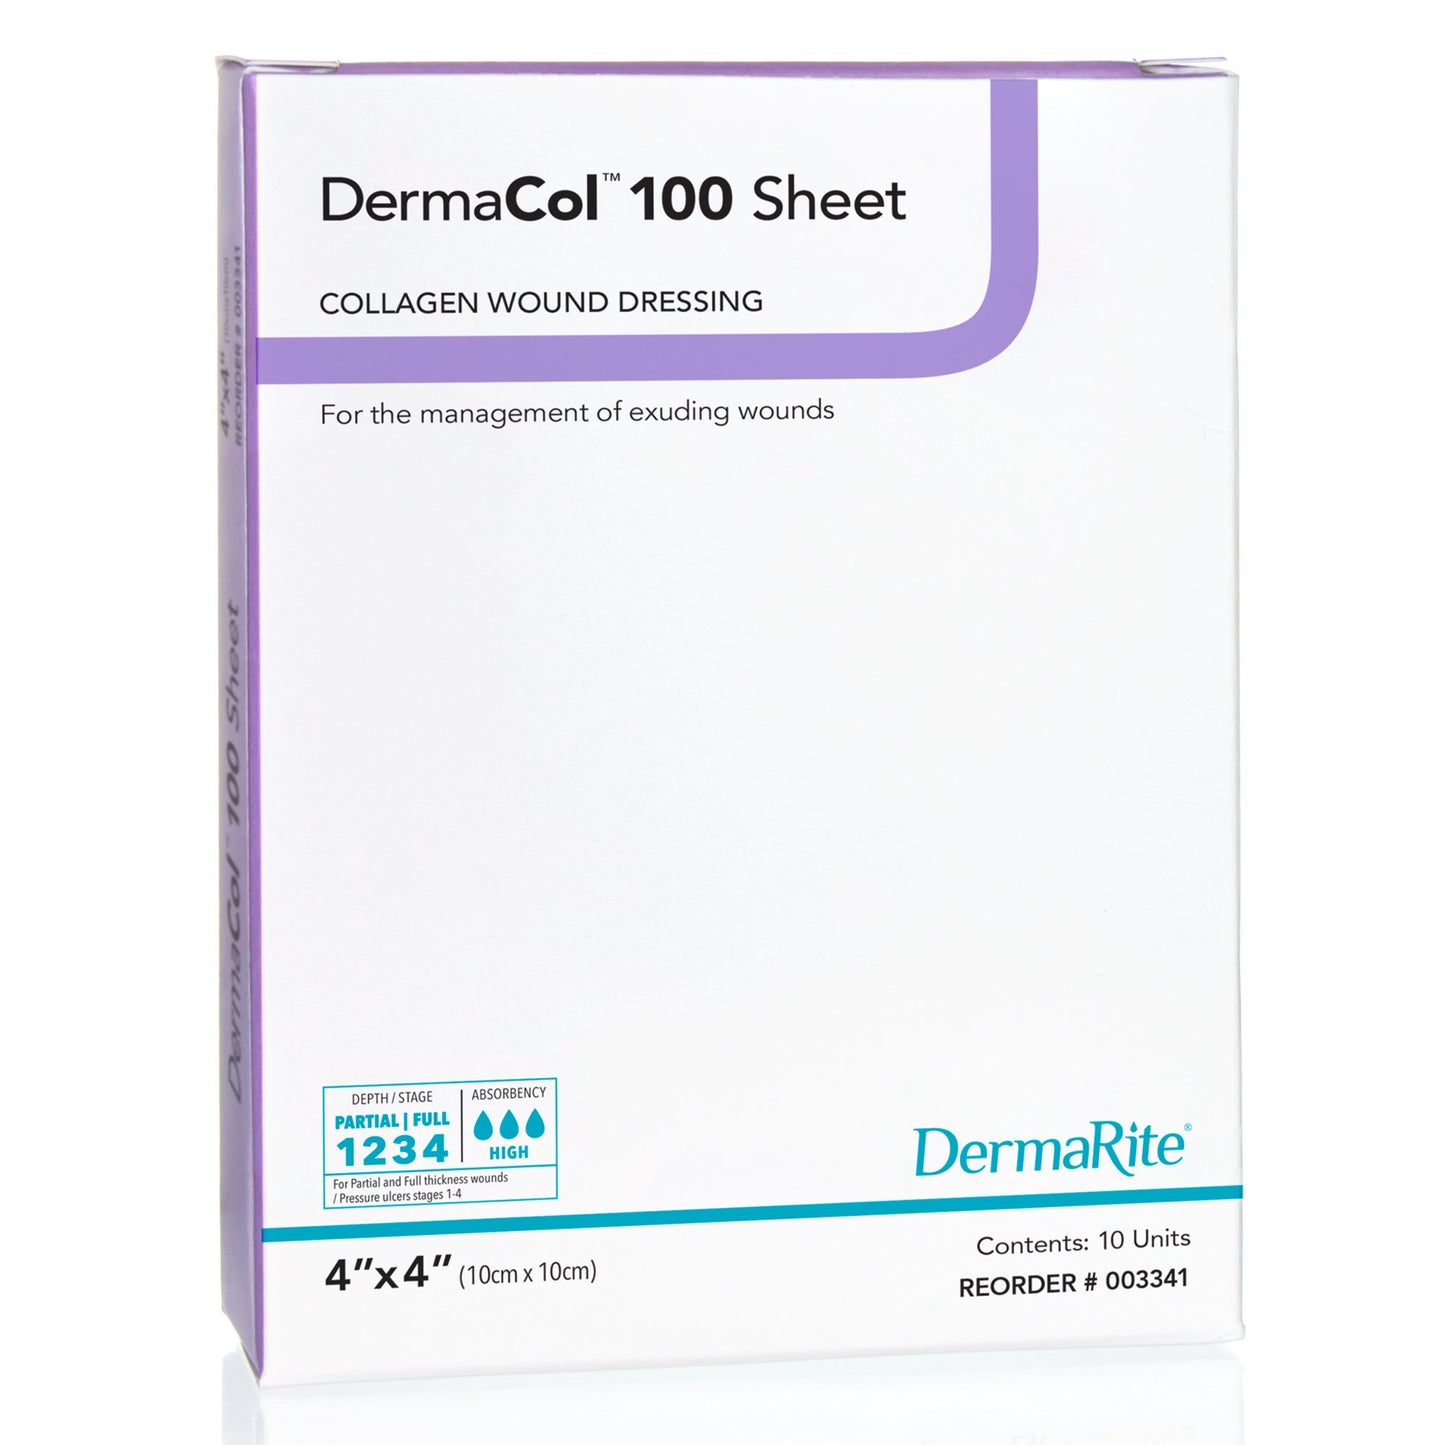 DermaCol 100 Sheet 100% Type 1 Bovine Collagen Wound Dressing, 4" x 4" - 003341